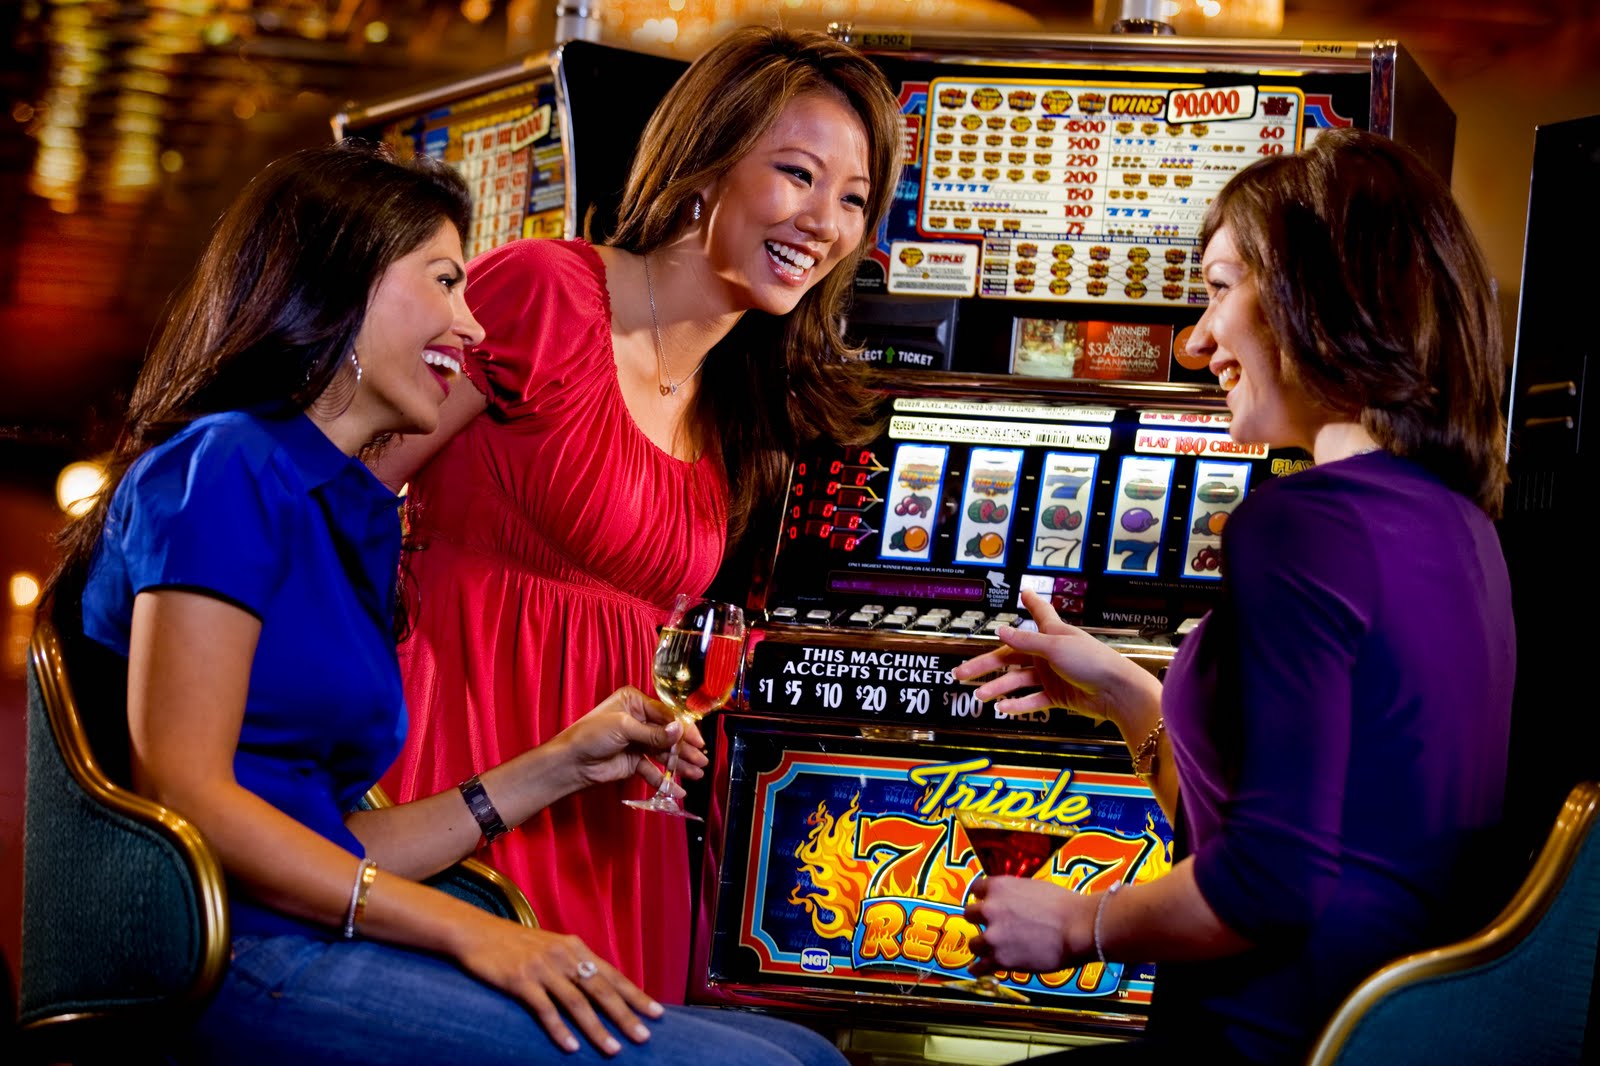 Casino slots sites. Казино. Игровые автоматы девушки. Казино девушки игровые автоматы. Люди в казино игровые автоматы.